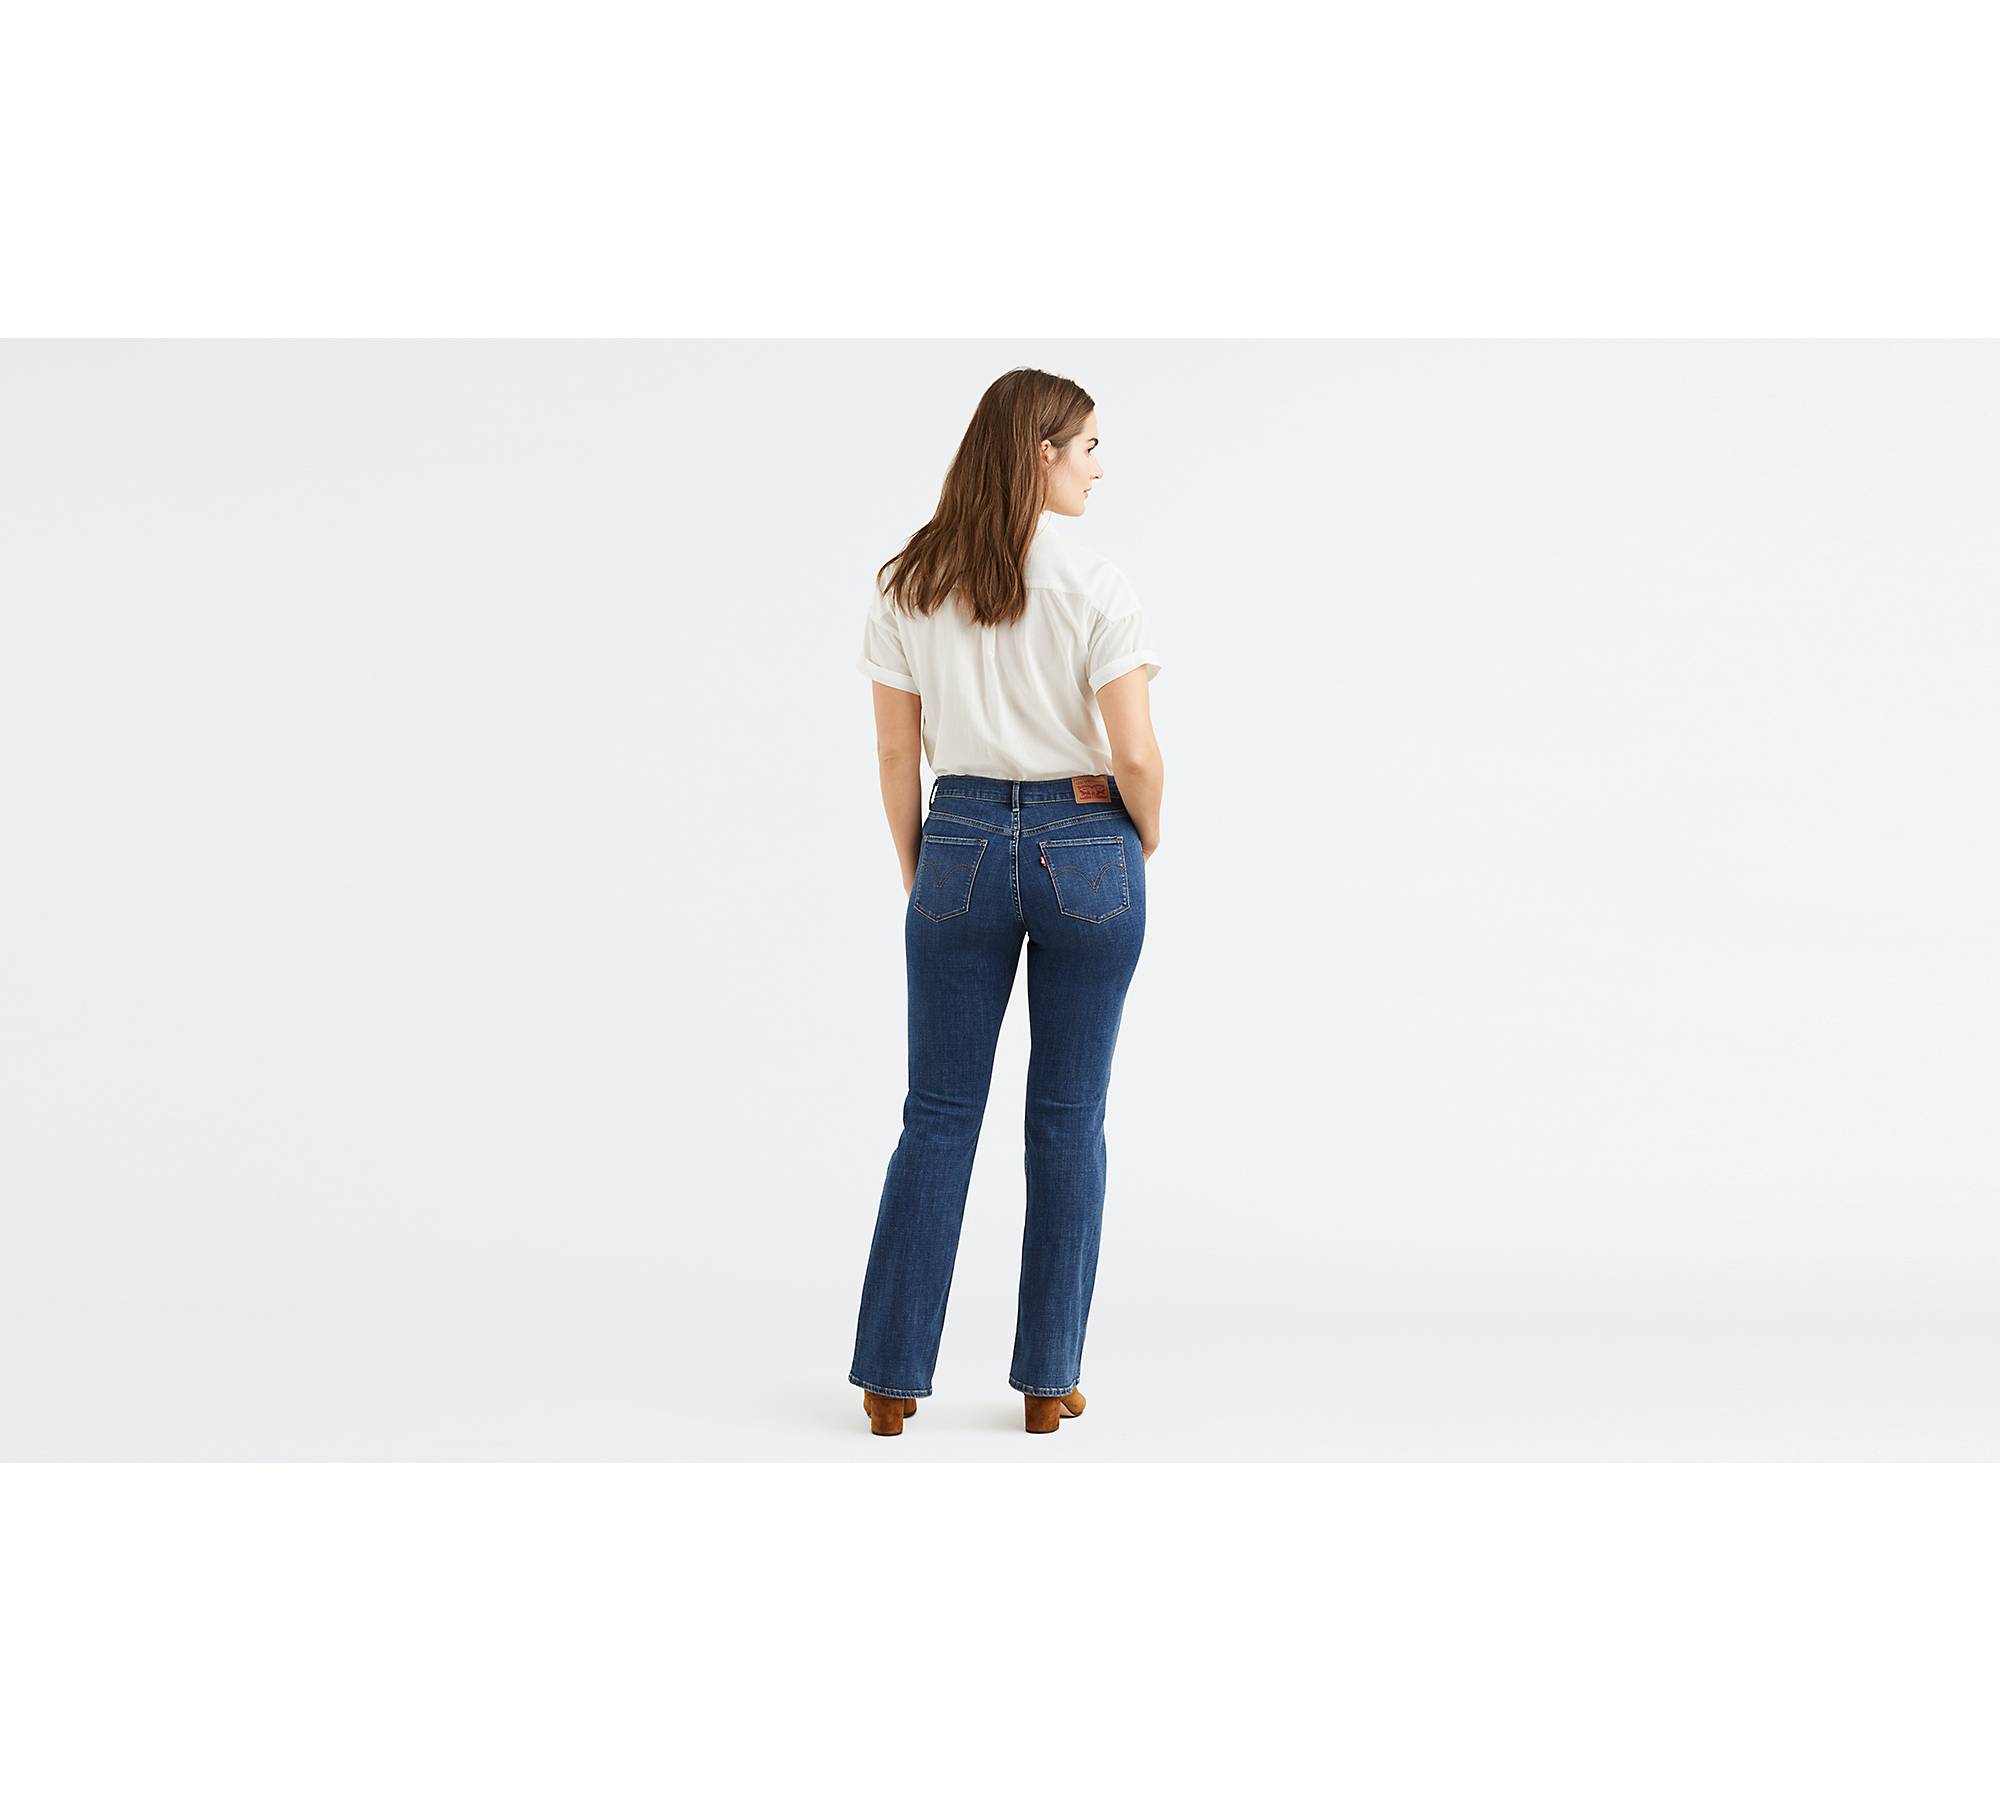 Murdoch's – Levi's - Women's Classic Bootcut Jeans